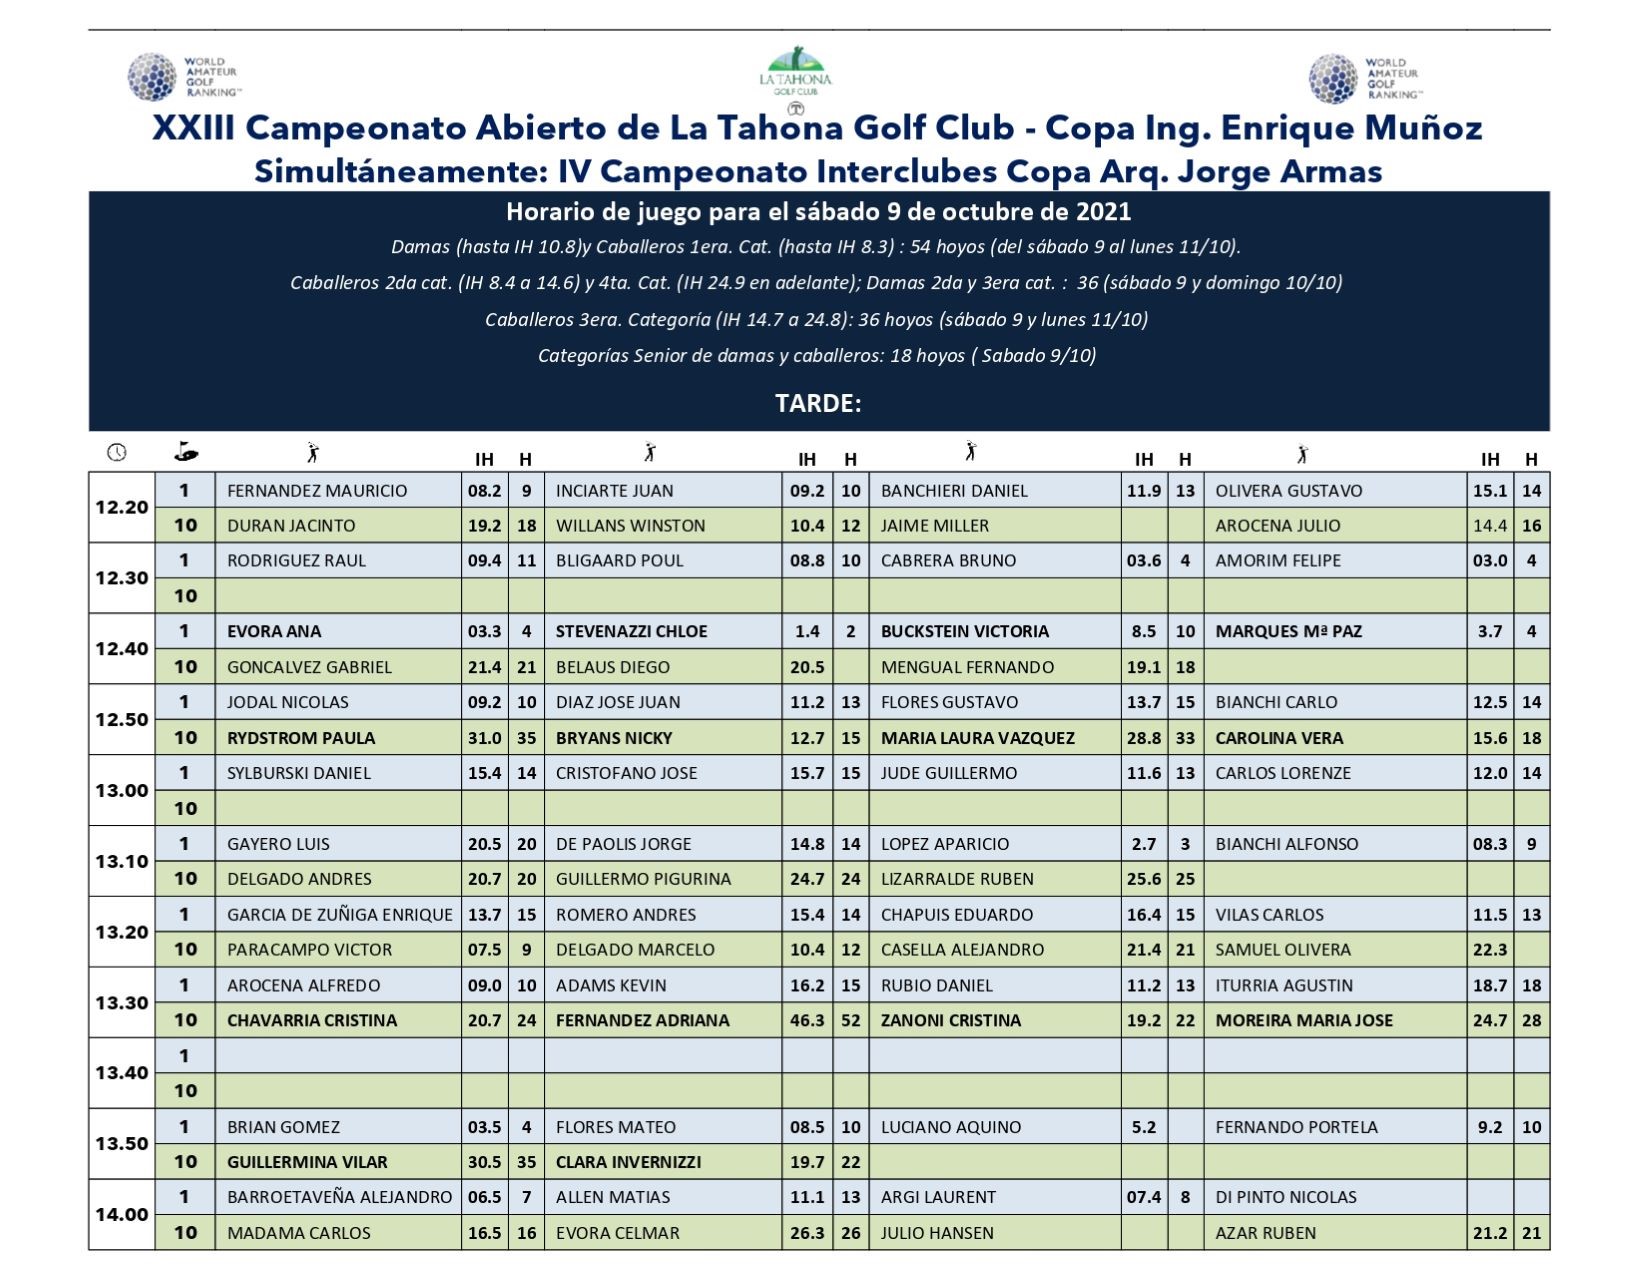 XXIII Cto. Abierto de La Tahona Golf Club Copa Ing. Enrique Muoz - horarios 1er da - DE TARDE